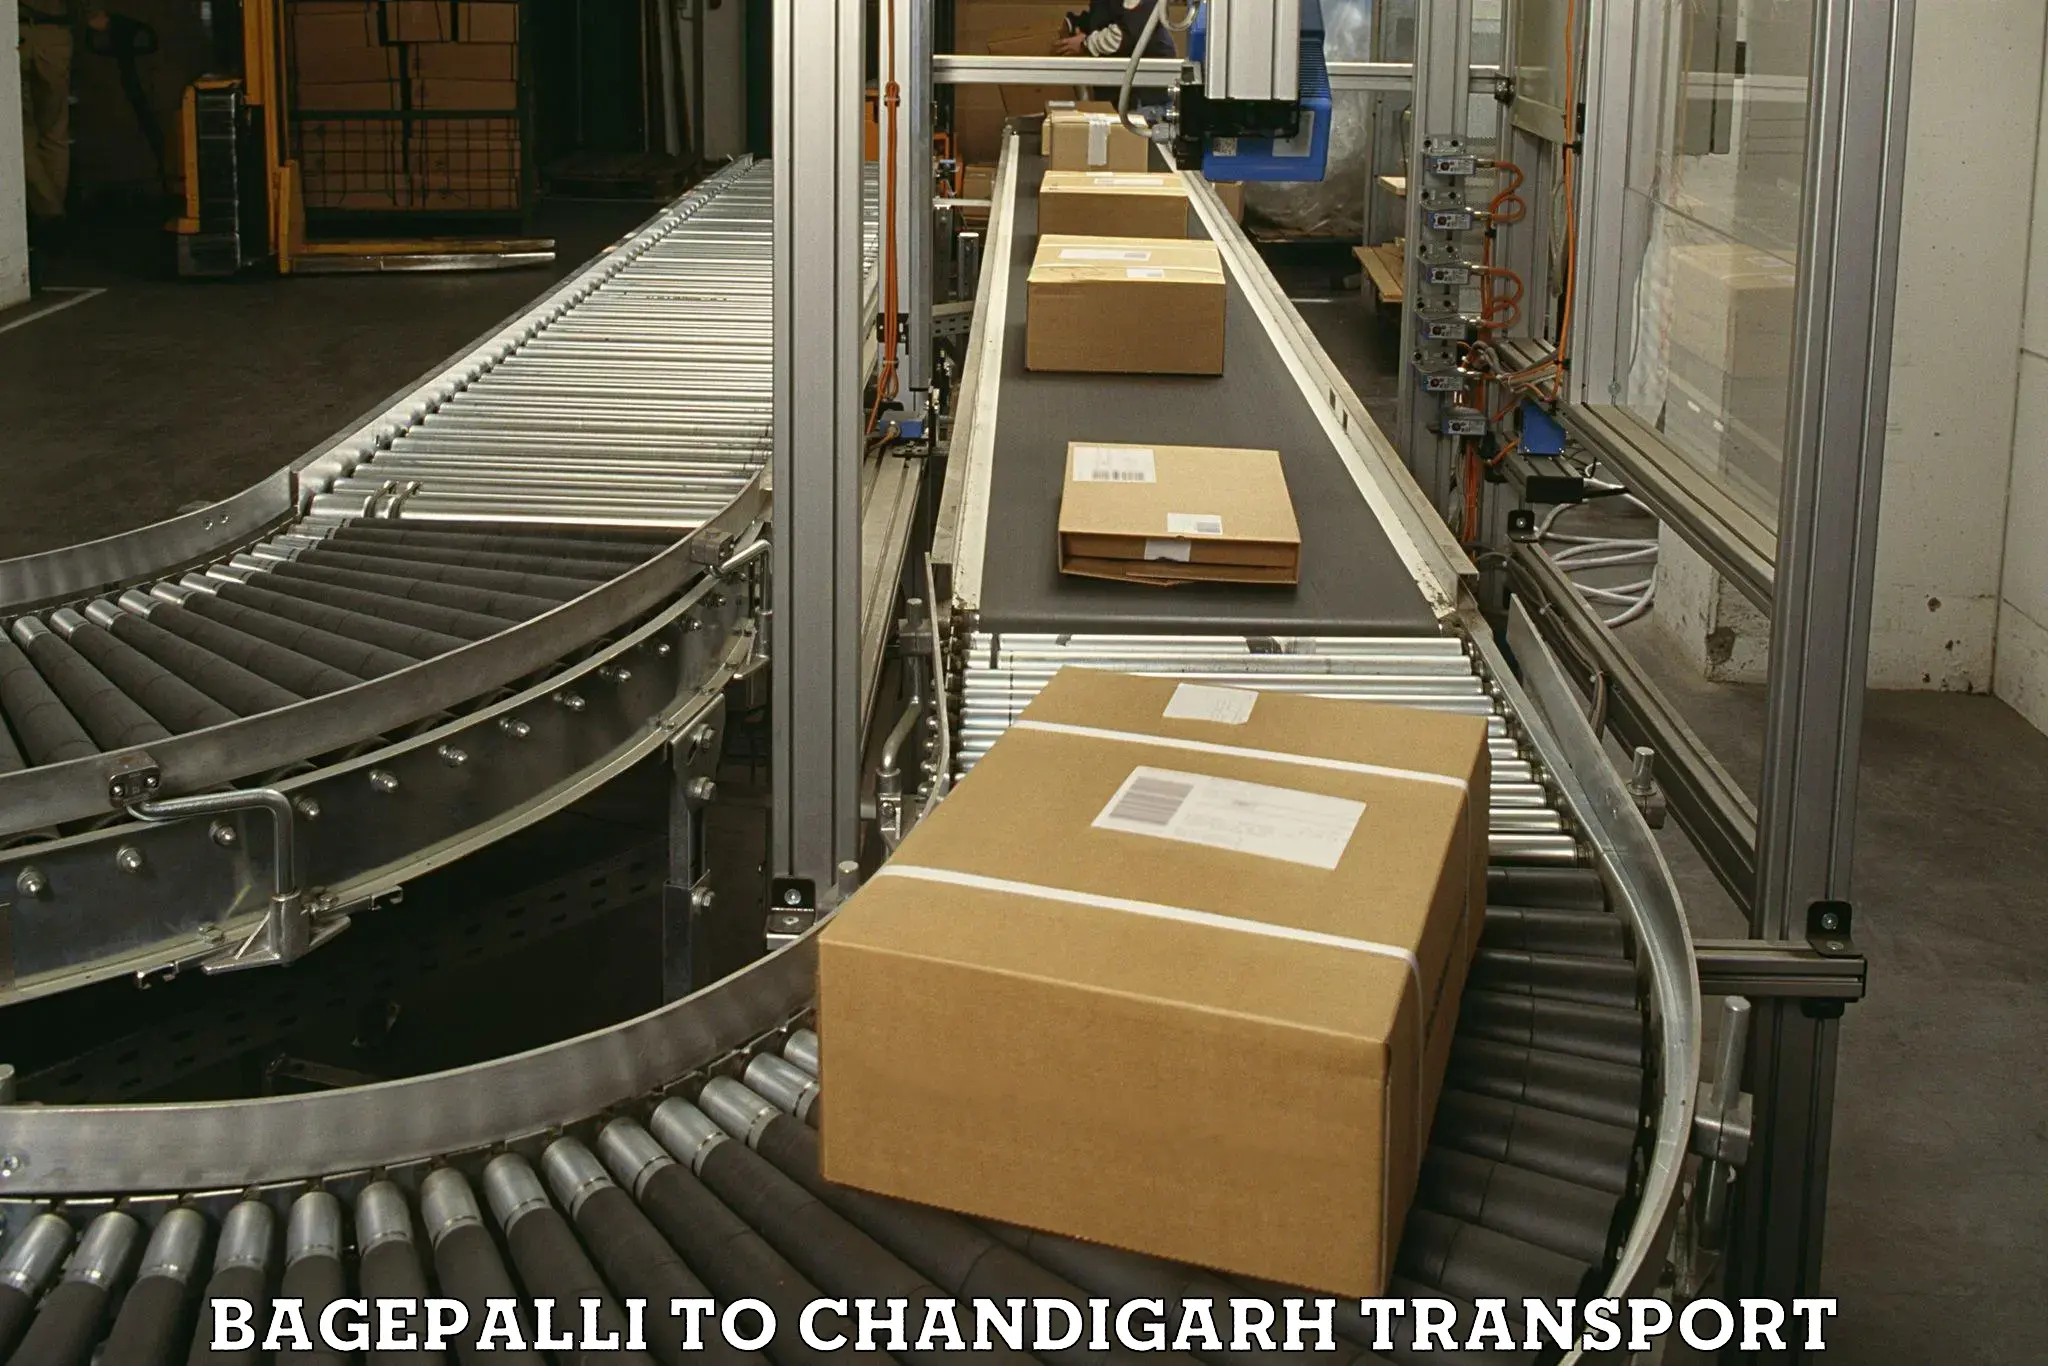 Nearest transport service Bagepalli to Chandigarh